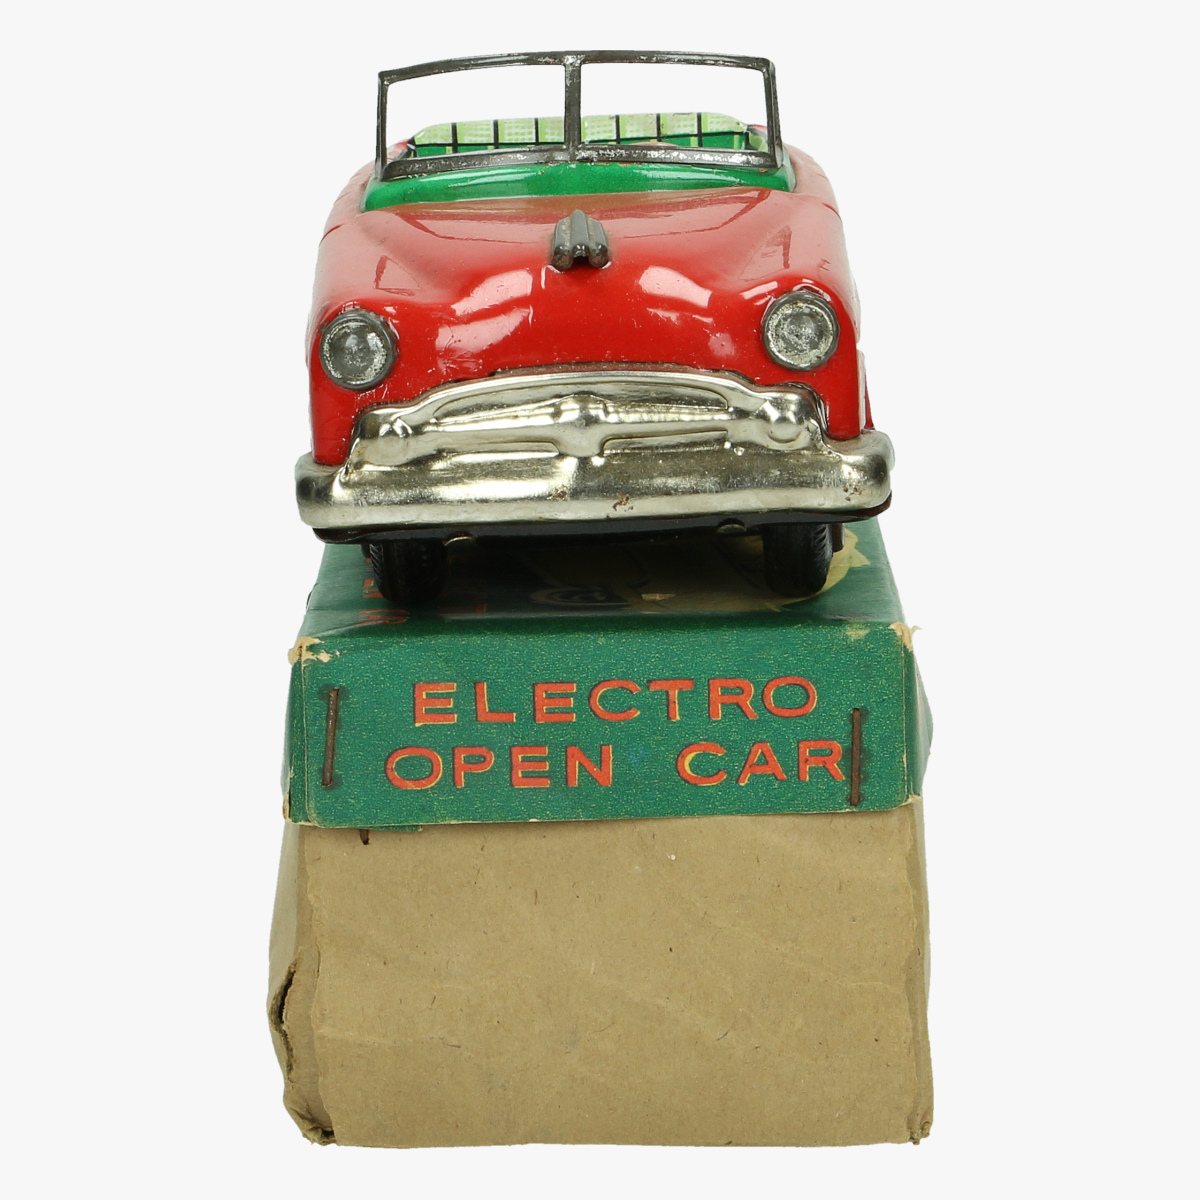 Afbeeldingen van electro open car 1958